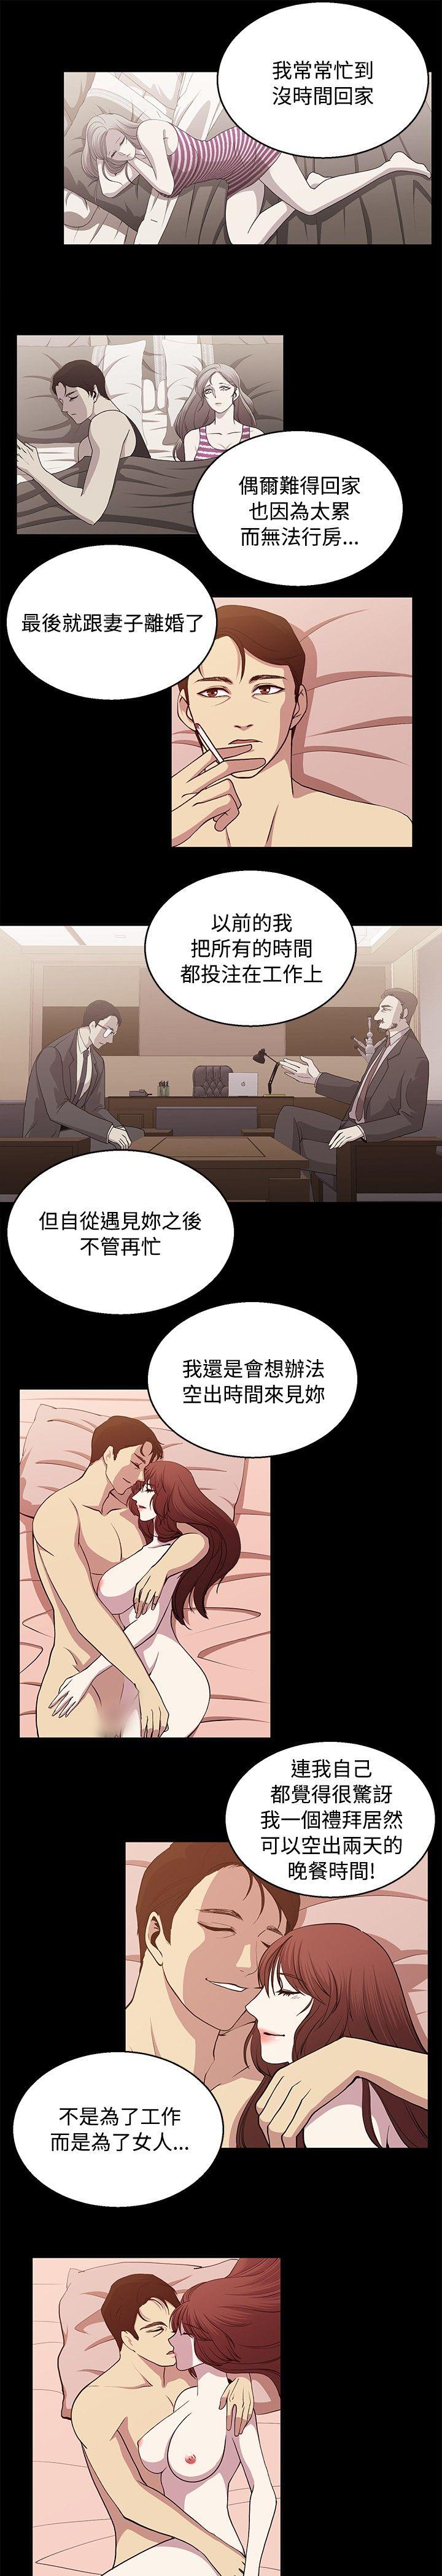 韩国污漫画 贊助者 第24话 3